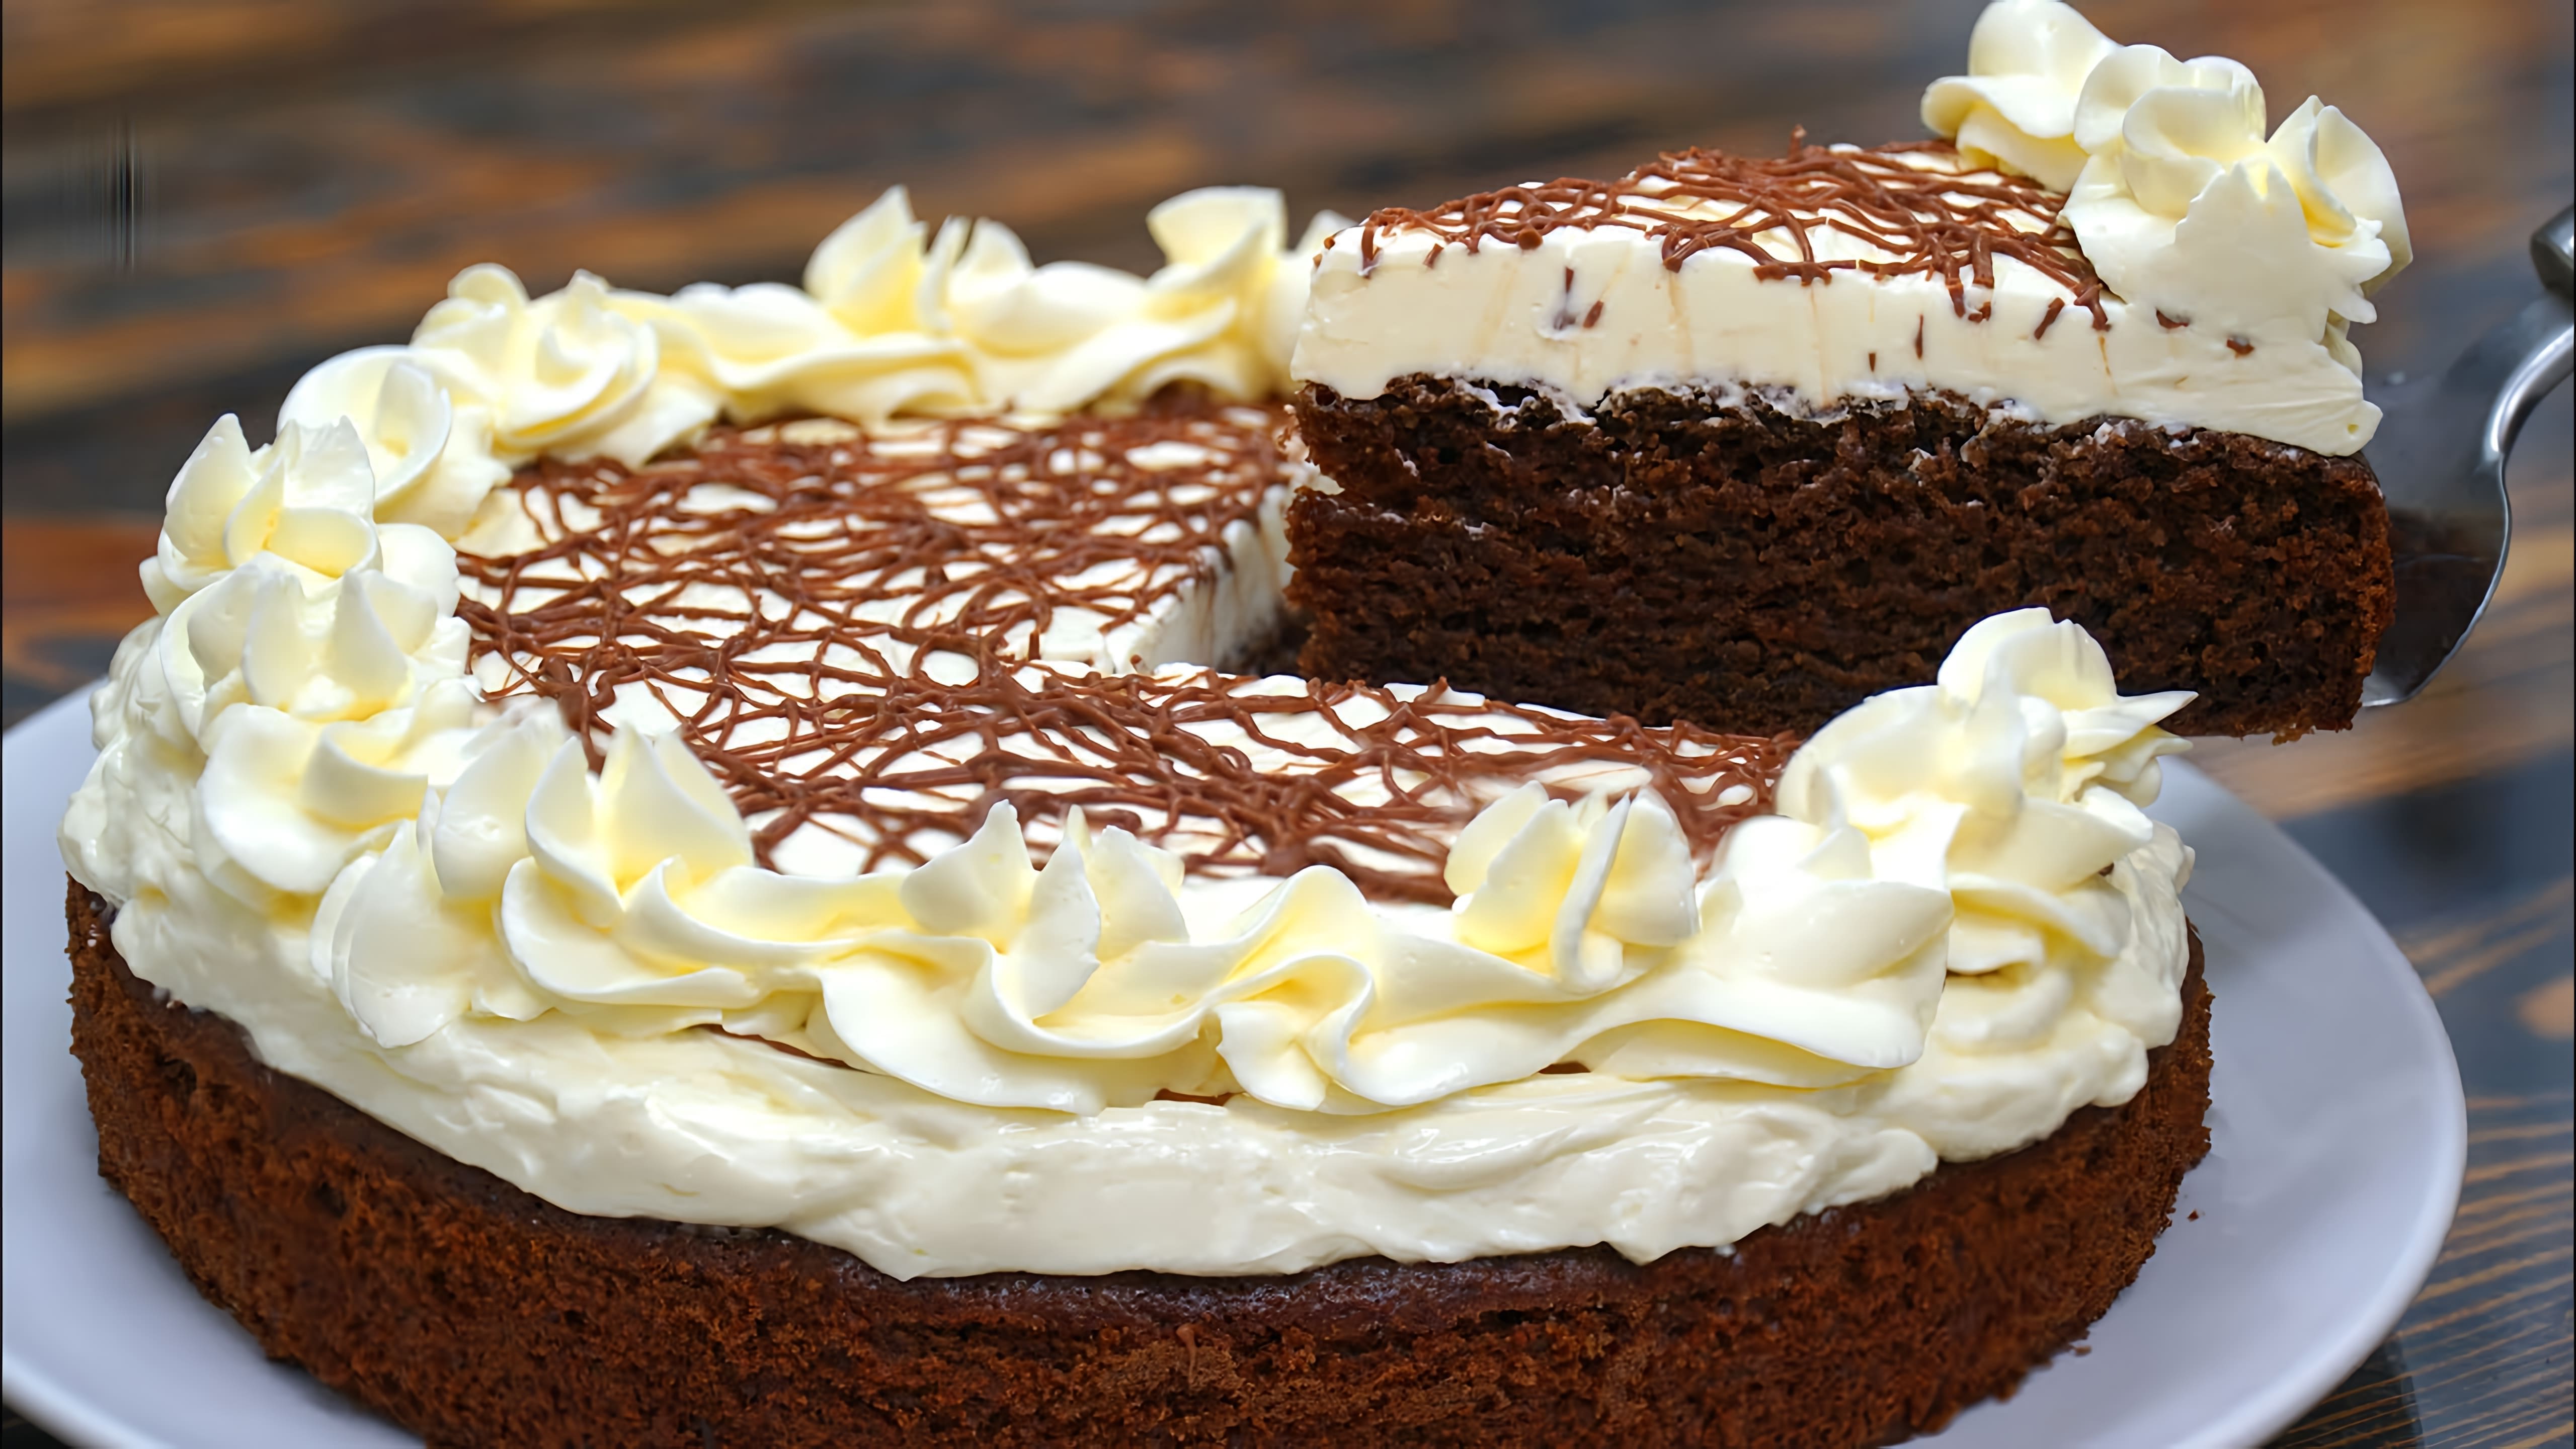 В этом видео-ролике "ШОКОЛАДНЫЙ Тортик БЕЗ ЯИЦ! БЮДЖЕТНО и ВКУСНО! 30 минут Рецепт Пирог | Кулинарим с Таней" Таня, известная кулинарка, делится своим рецептом шоколадного торта без яиц